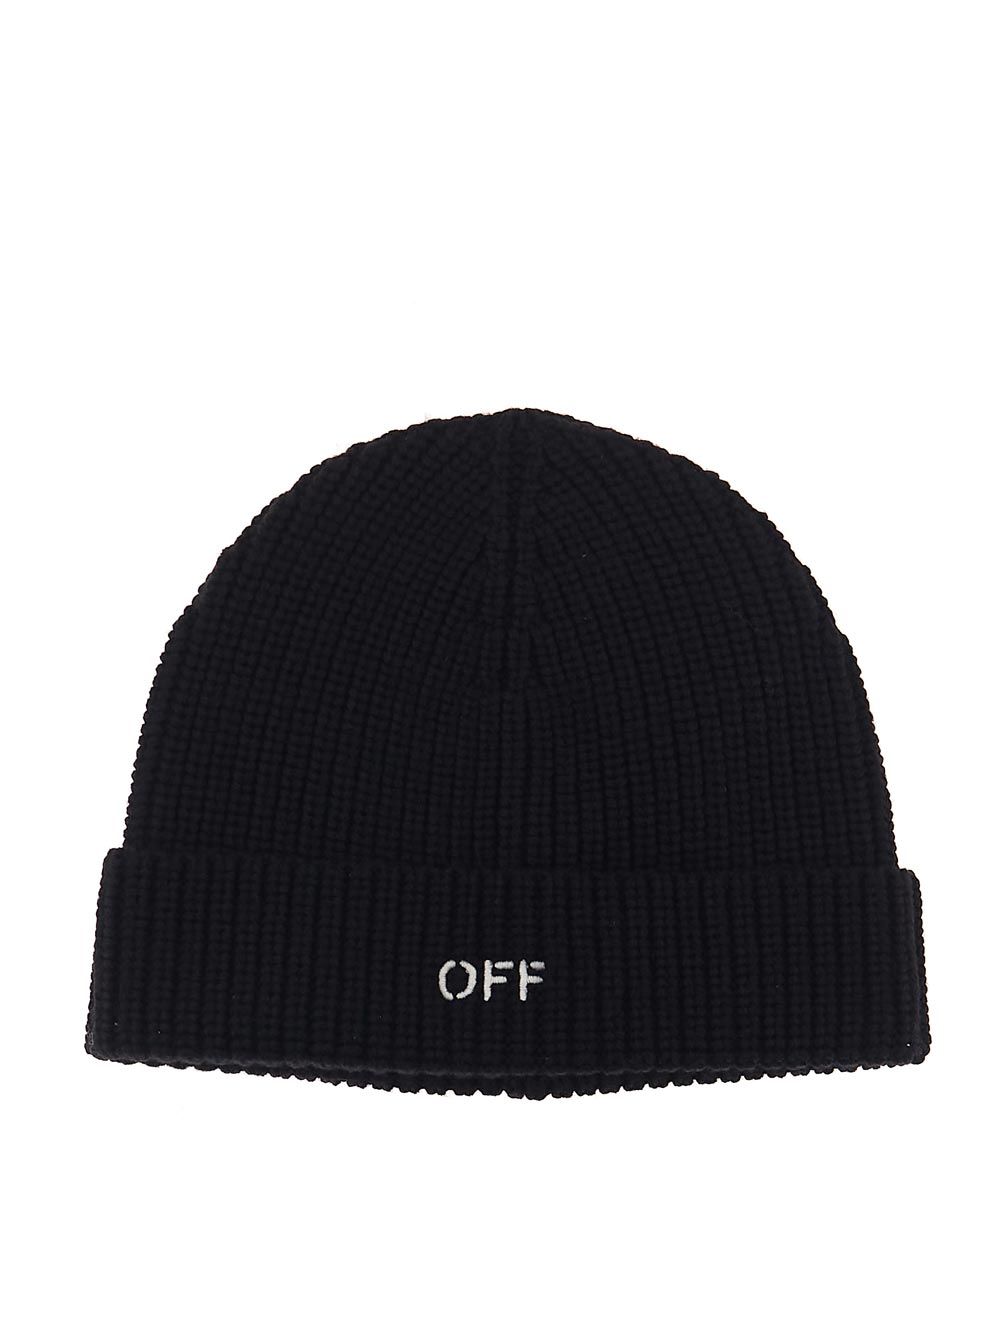 OFF-WHITE OFF-WHITE Hat black OWLC017F23KNI0011004